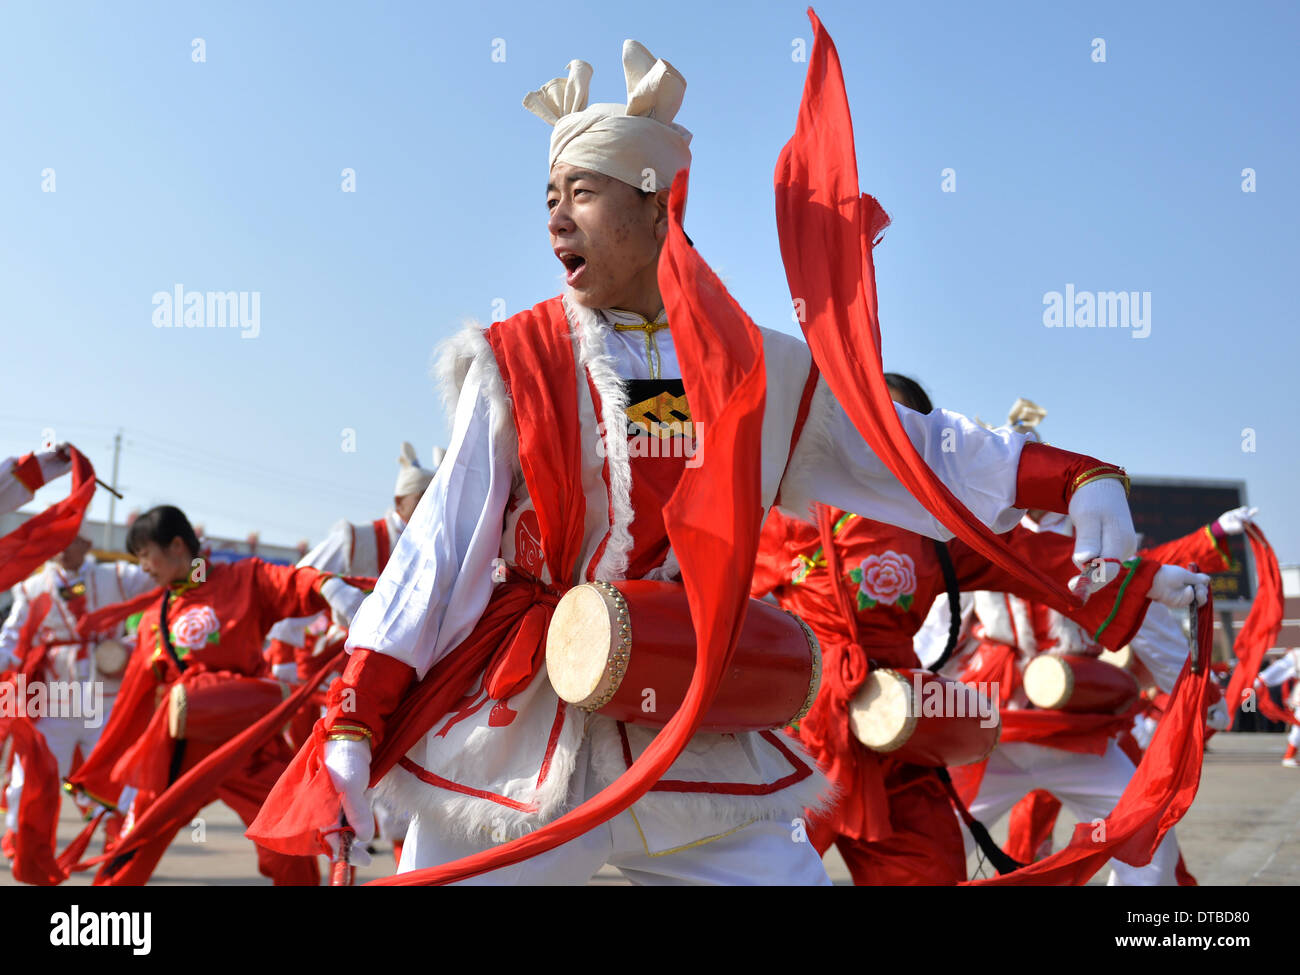 Hohhot, China la Región Autónoma de Mongolia Interior. El 14 de febrero de 2014. La gente del Condado Horinger realizar tambor batiendo durante una celebración en Hohhot, capital del norte de China, la Región Autónoma de Mongolia Interior, el 14 de febrero, 2014. La gente en el interior de Mongolia celebró diversas celebraciones para el Festival de las Linternas, que cae en el decimoquinto día del primer mes del calendario lunar, o el 14 de febrero de este año. Crédito: Ren Junchuan/Xinhua/Alamy Live News Foto de stock